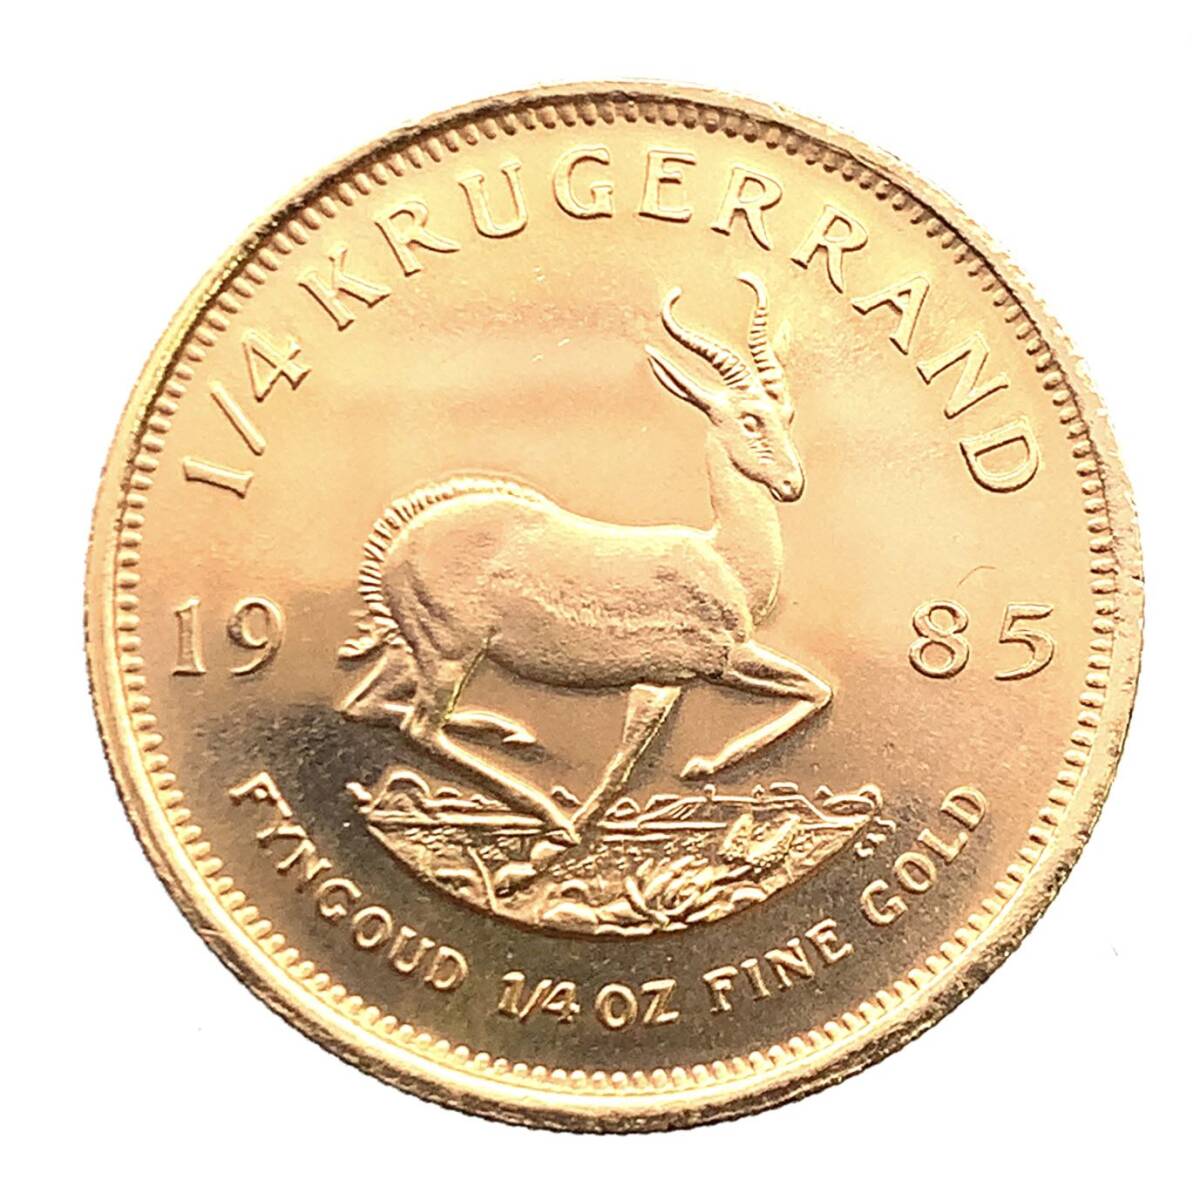  クルーガーランド金貨 1985年 8.4g 南アフリカ共和国 22金 イエローゴールド コレクション Gold_画像2